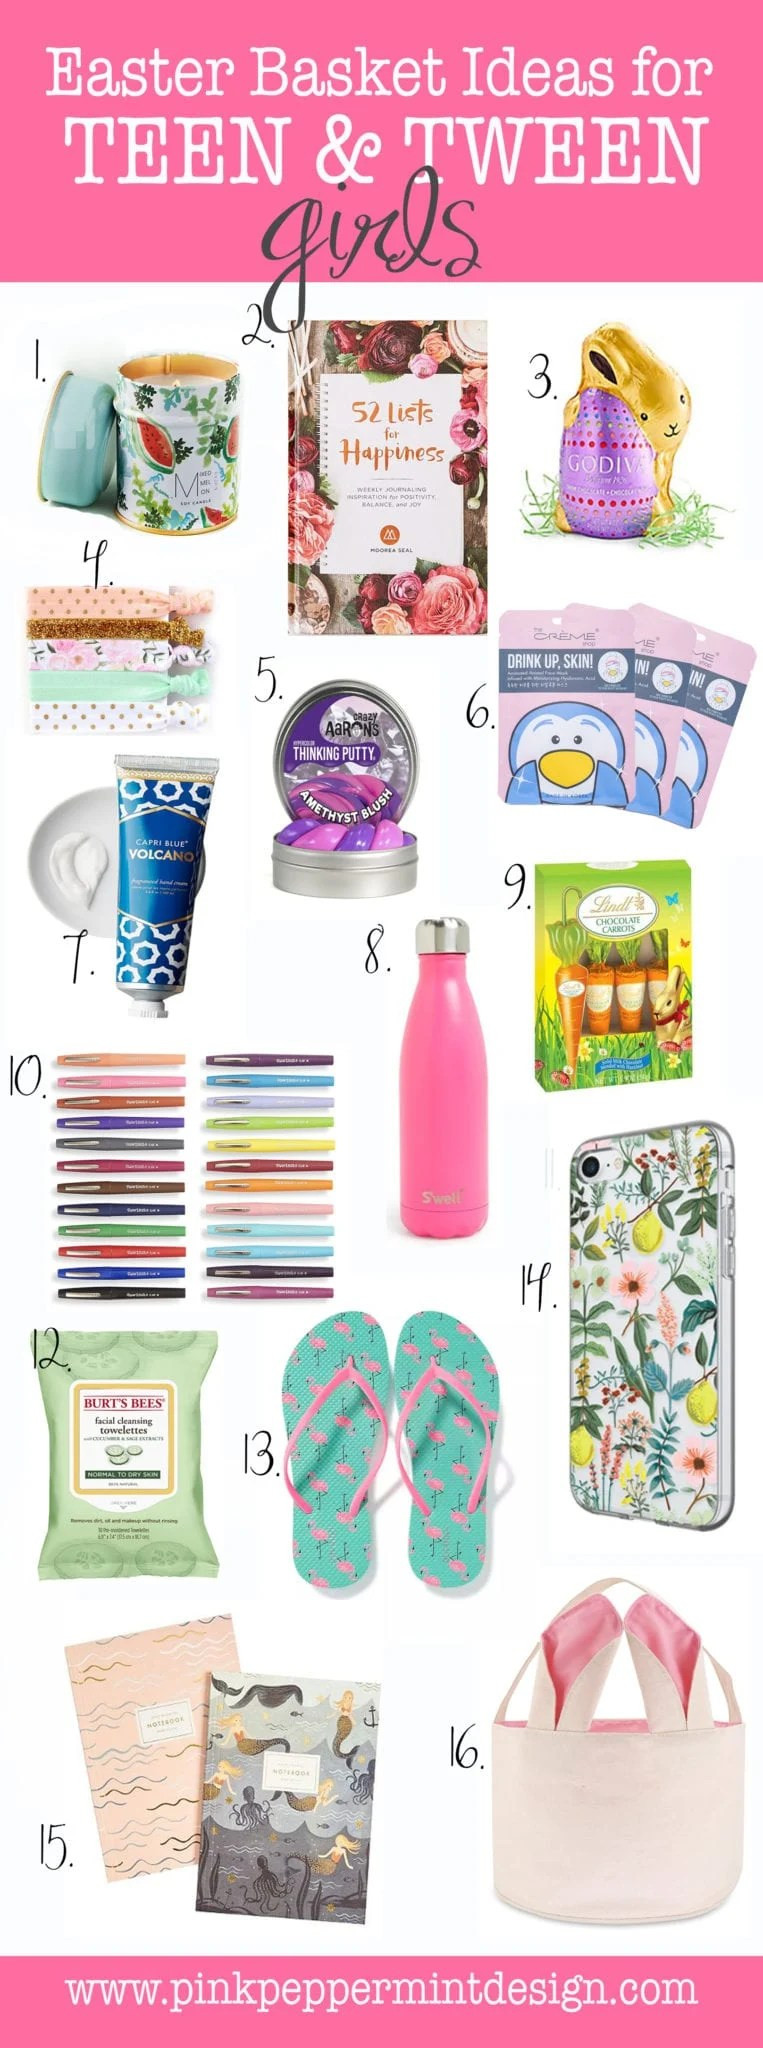 Easter Gift Ideas For Teenage Girl
 Best Easter Basket Gift Ideas for Tween & Teenage Girls